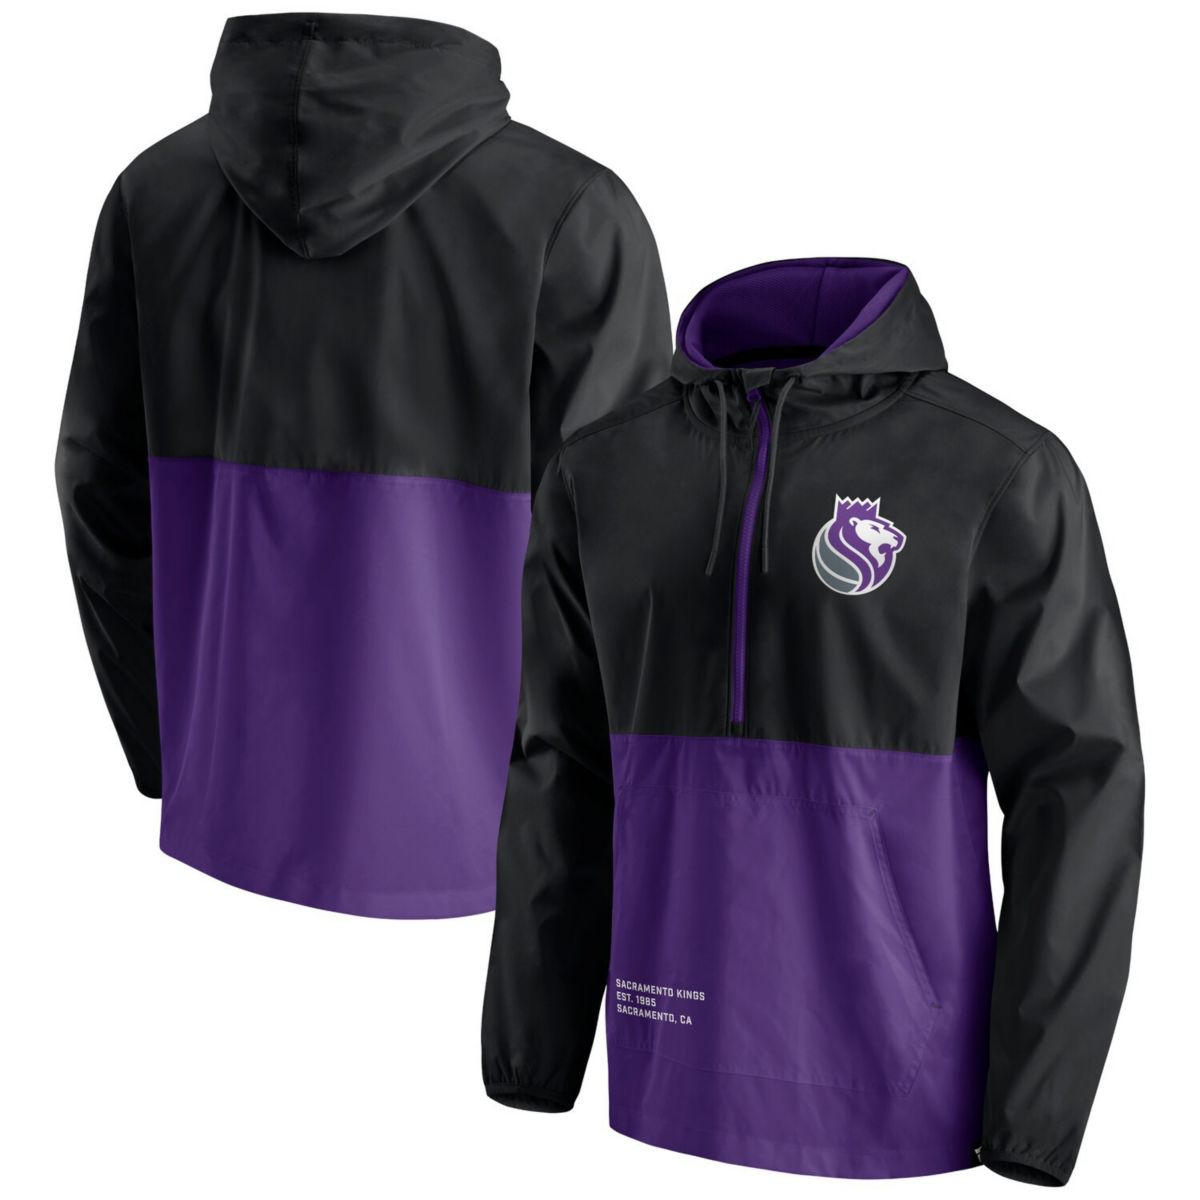 Мужская фирменная куртка Fanatics Black/Purple Sacramento Kings Anorak Block Party Ветровка с капюшоном на молнии до половины Fanatics